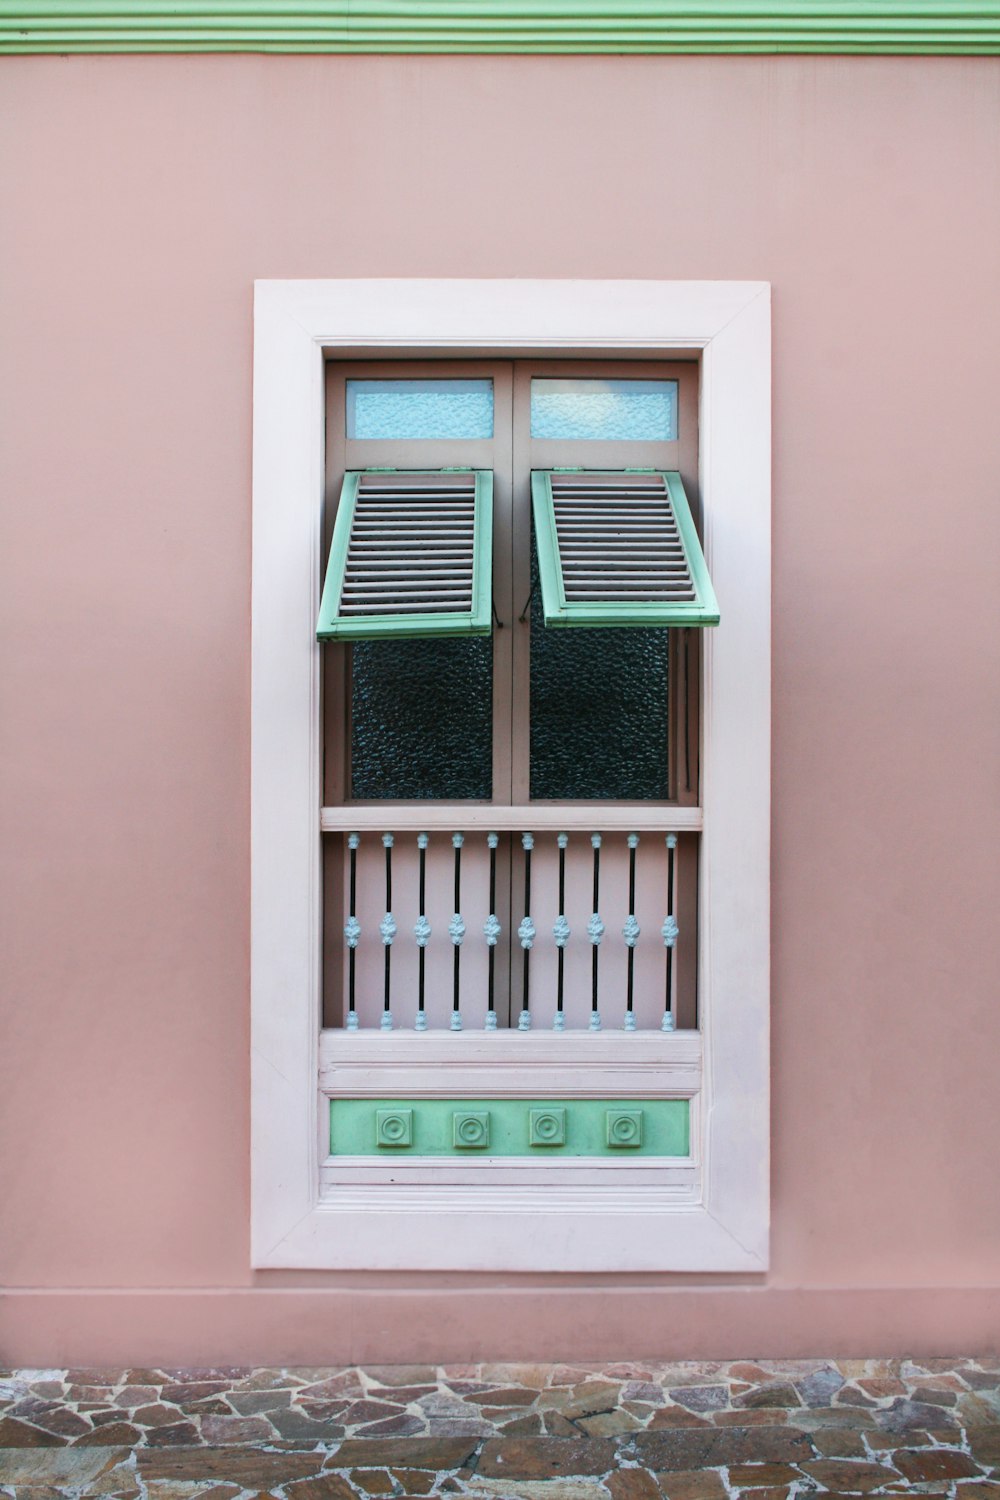 panel de ventana de persianas de madera blanco azulado y marrón abierto